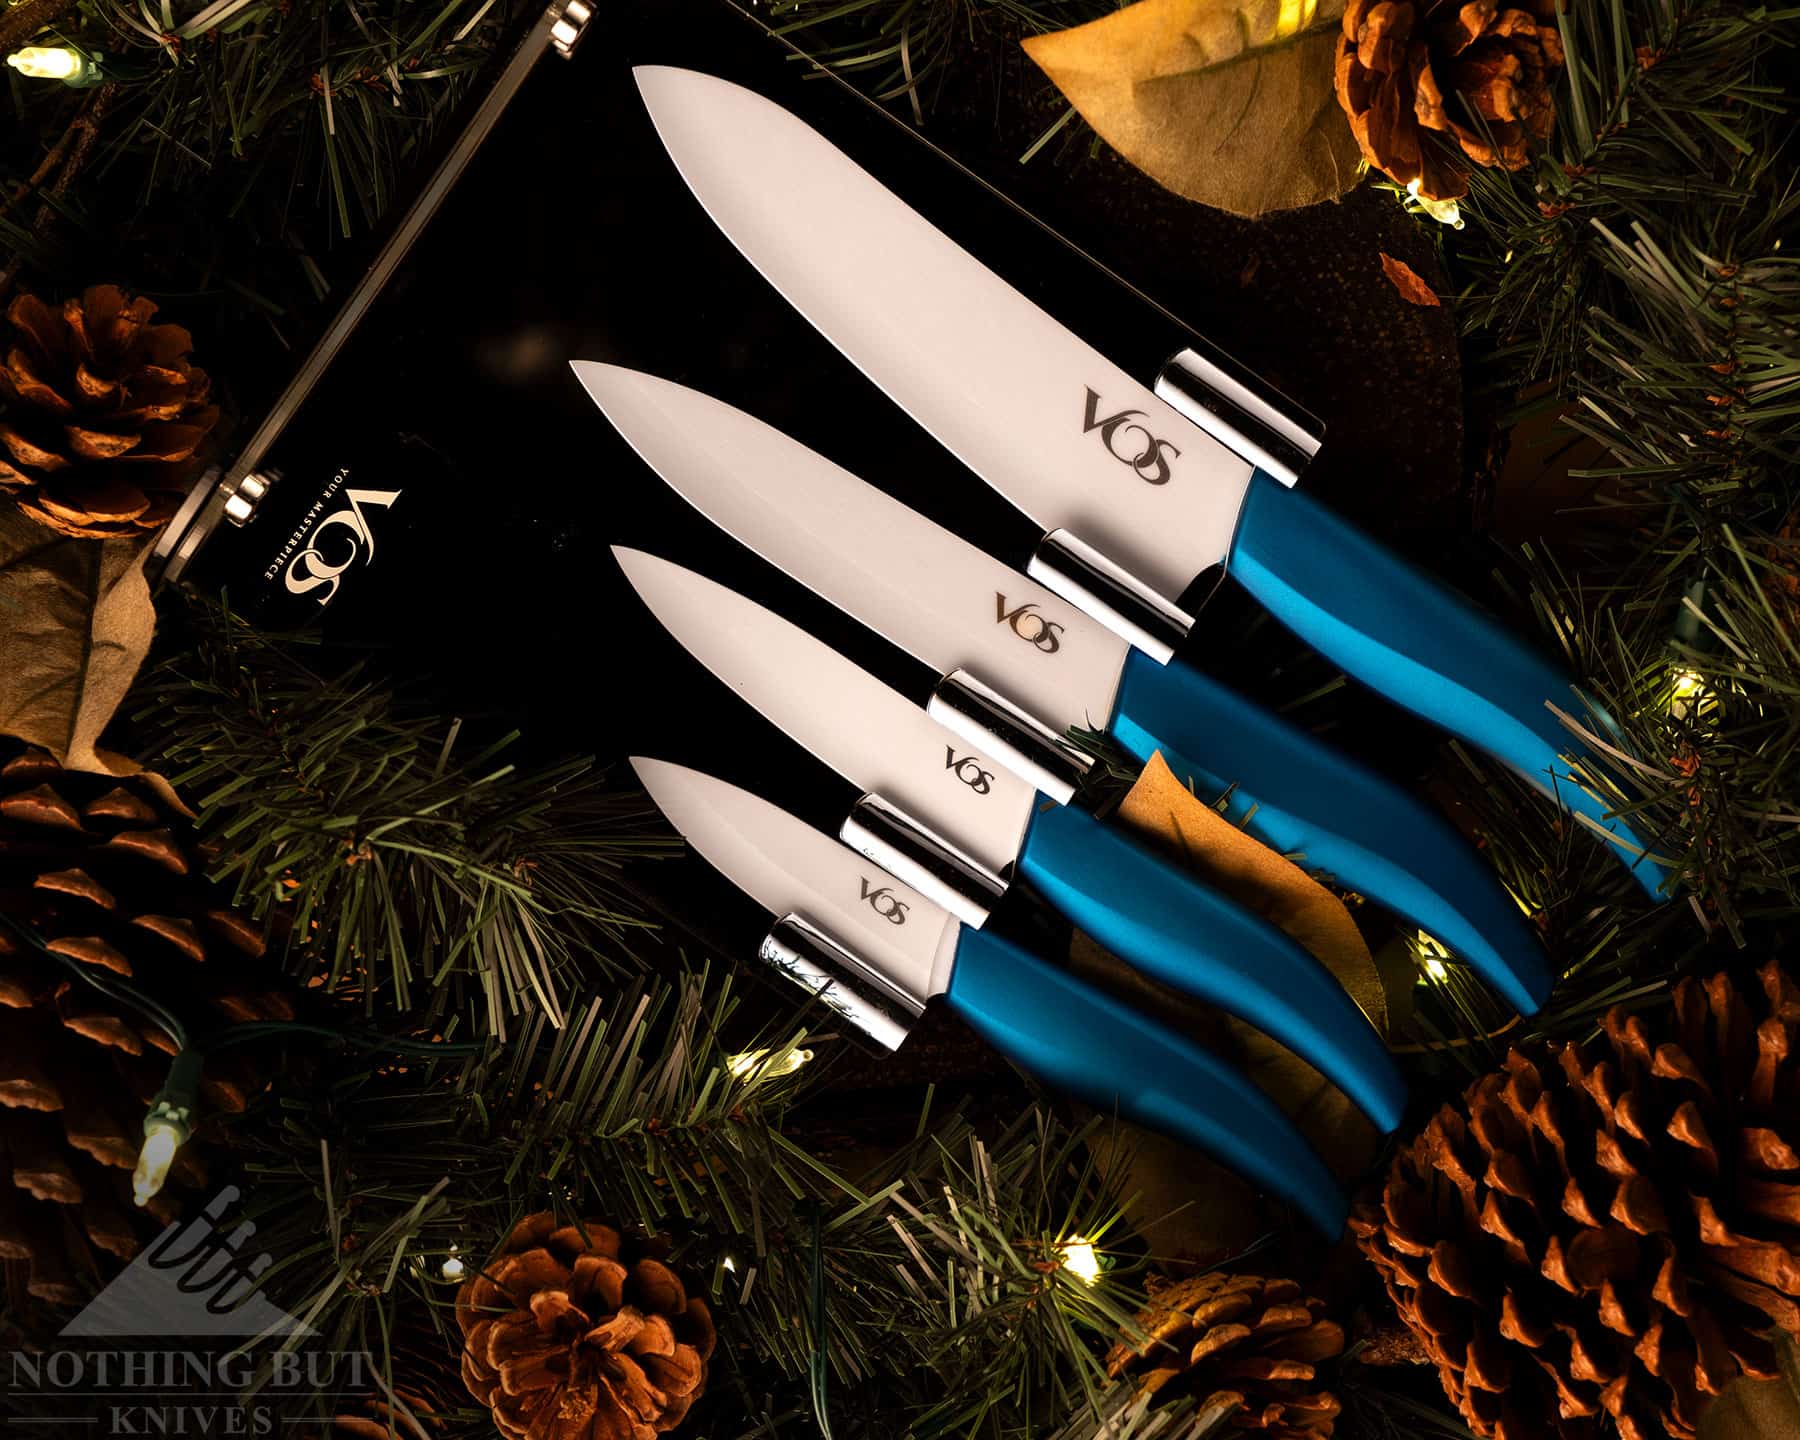 Vos Ceramic Knife Set, Ceramic Knives Set For Kitchen, Ceramic Kitchen  Knives With Holder, Ceramic Paring Knife 3, 4, 5, 6 Inch Black